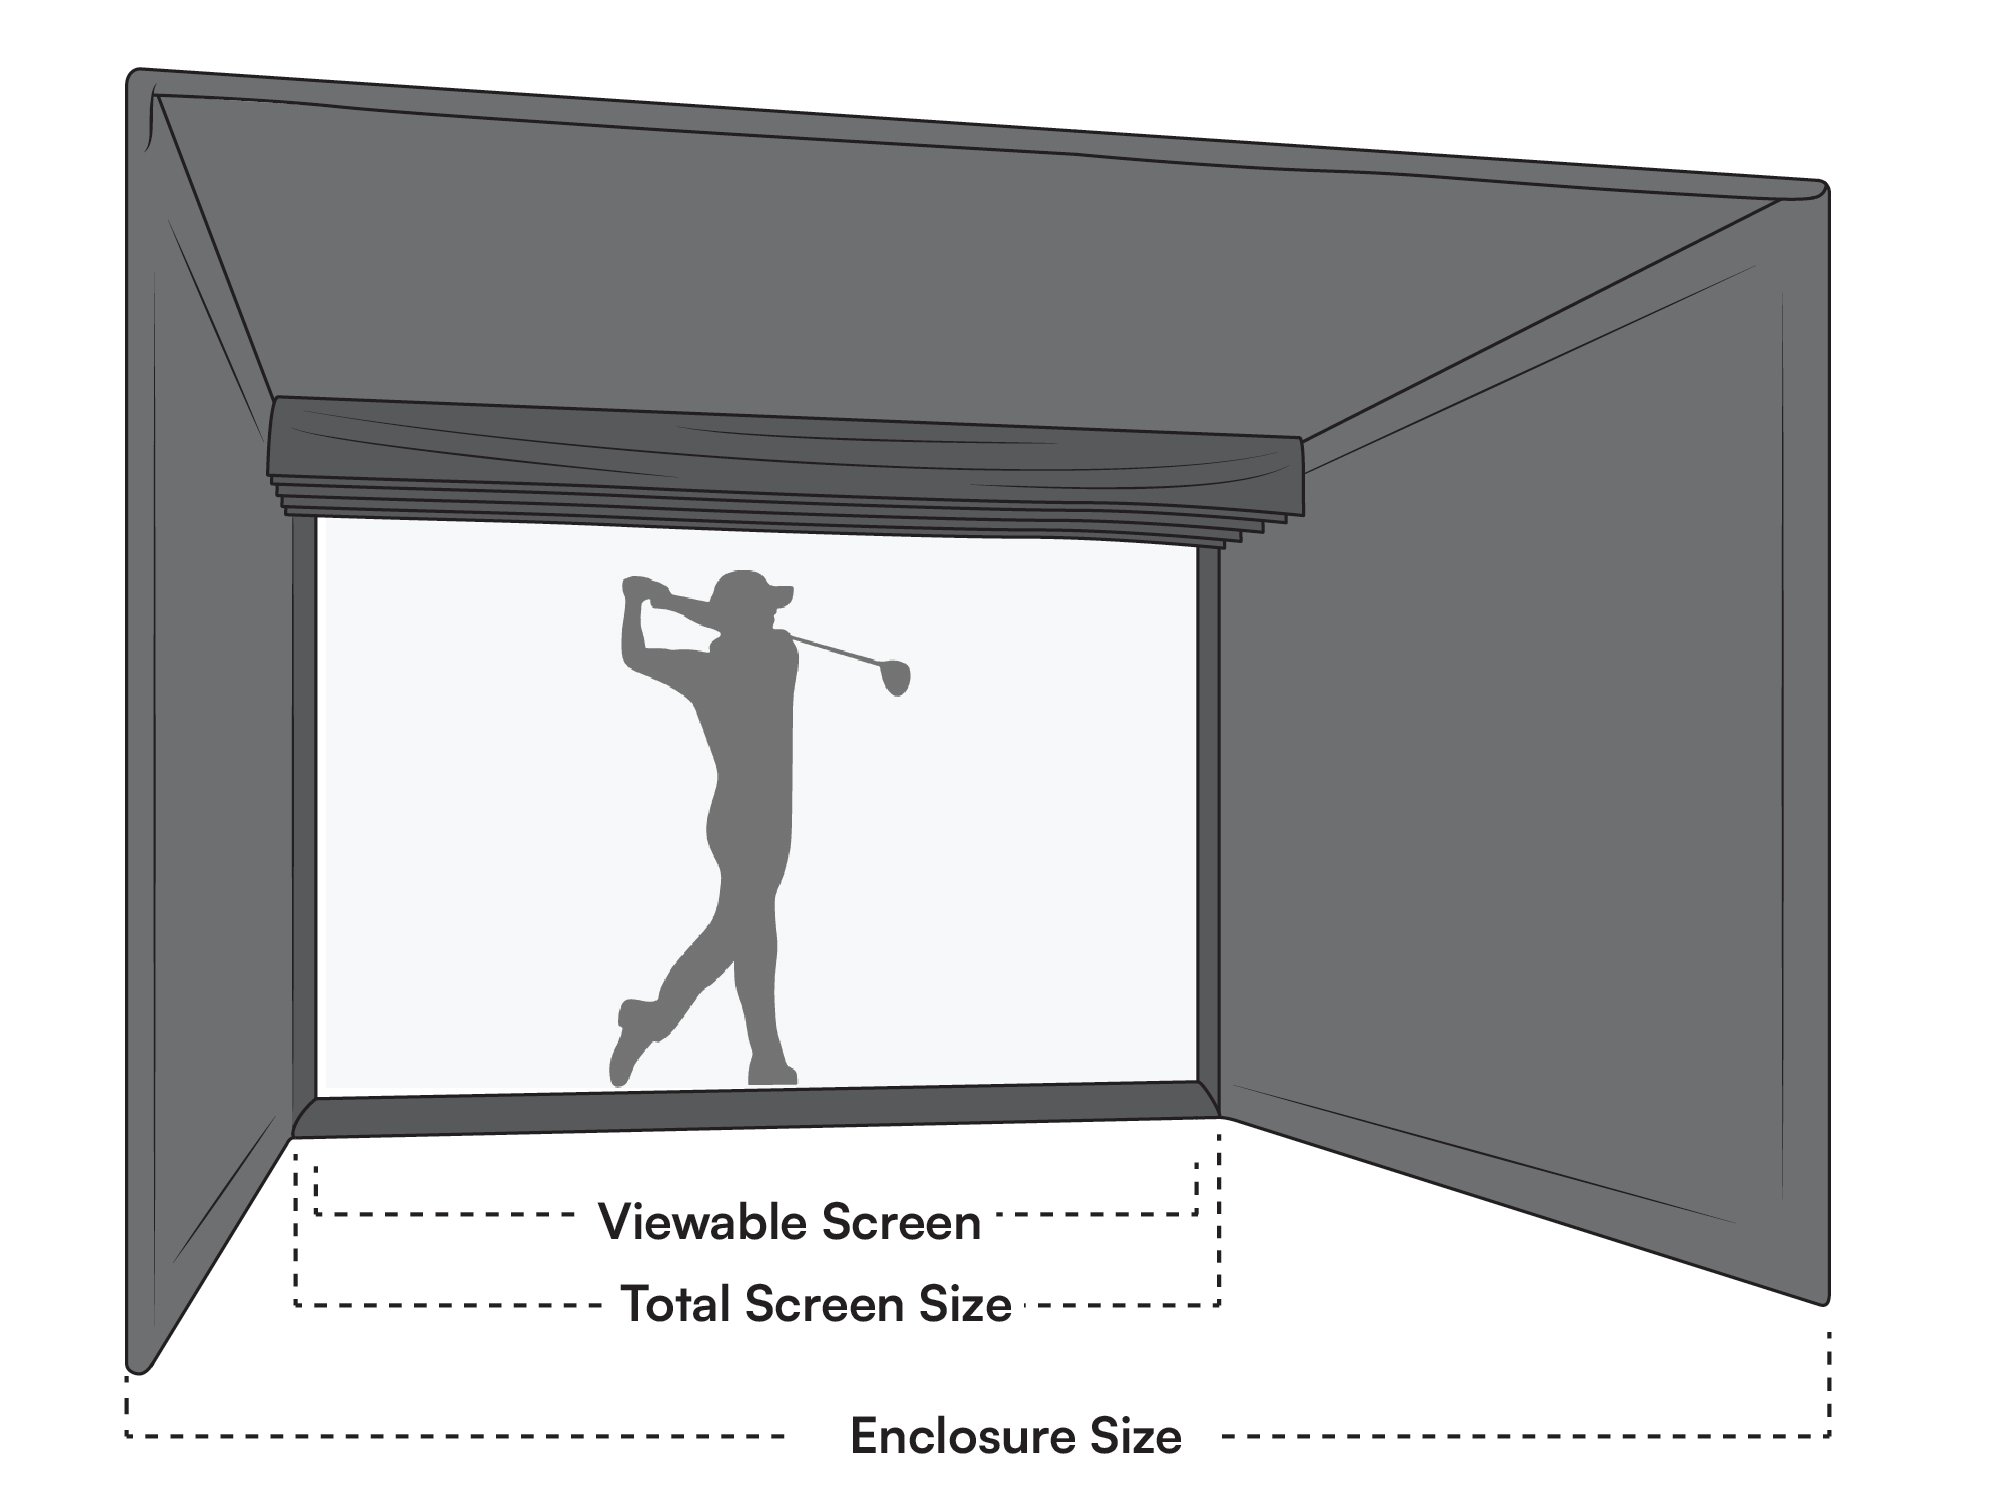 Diagram of measurements for a golf simulator screen